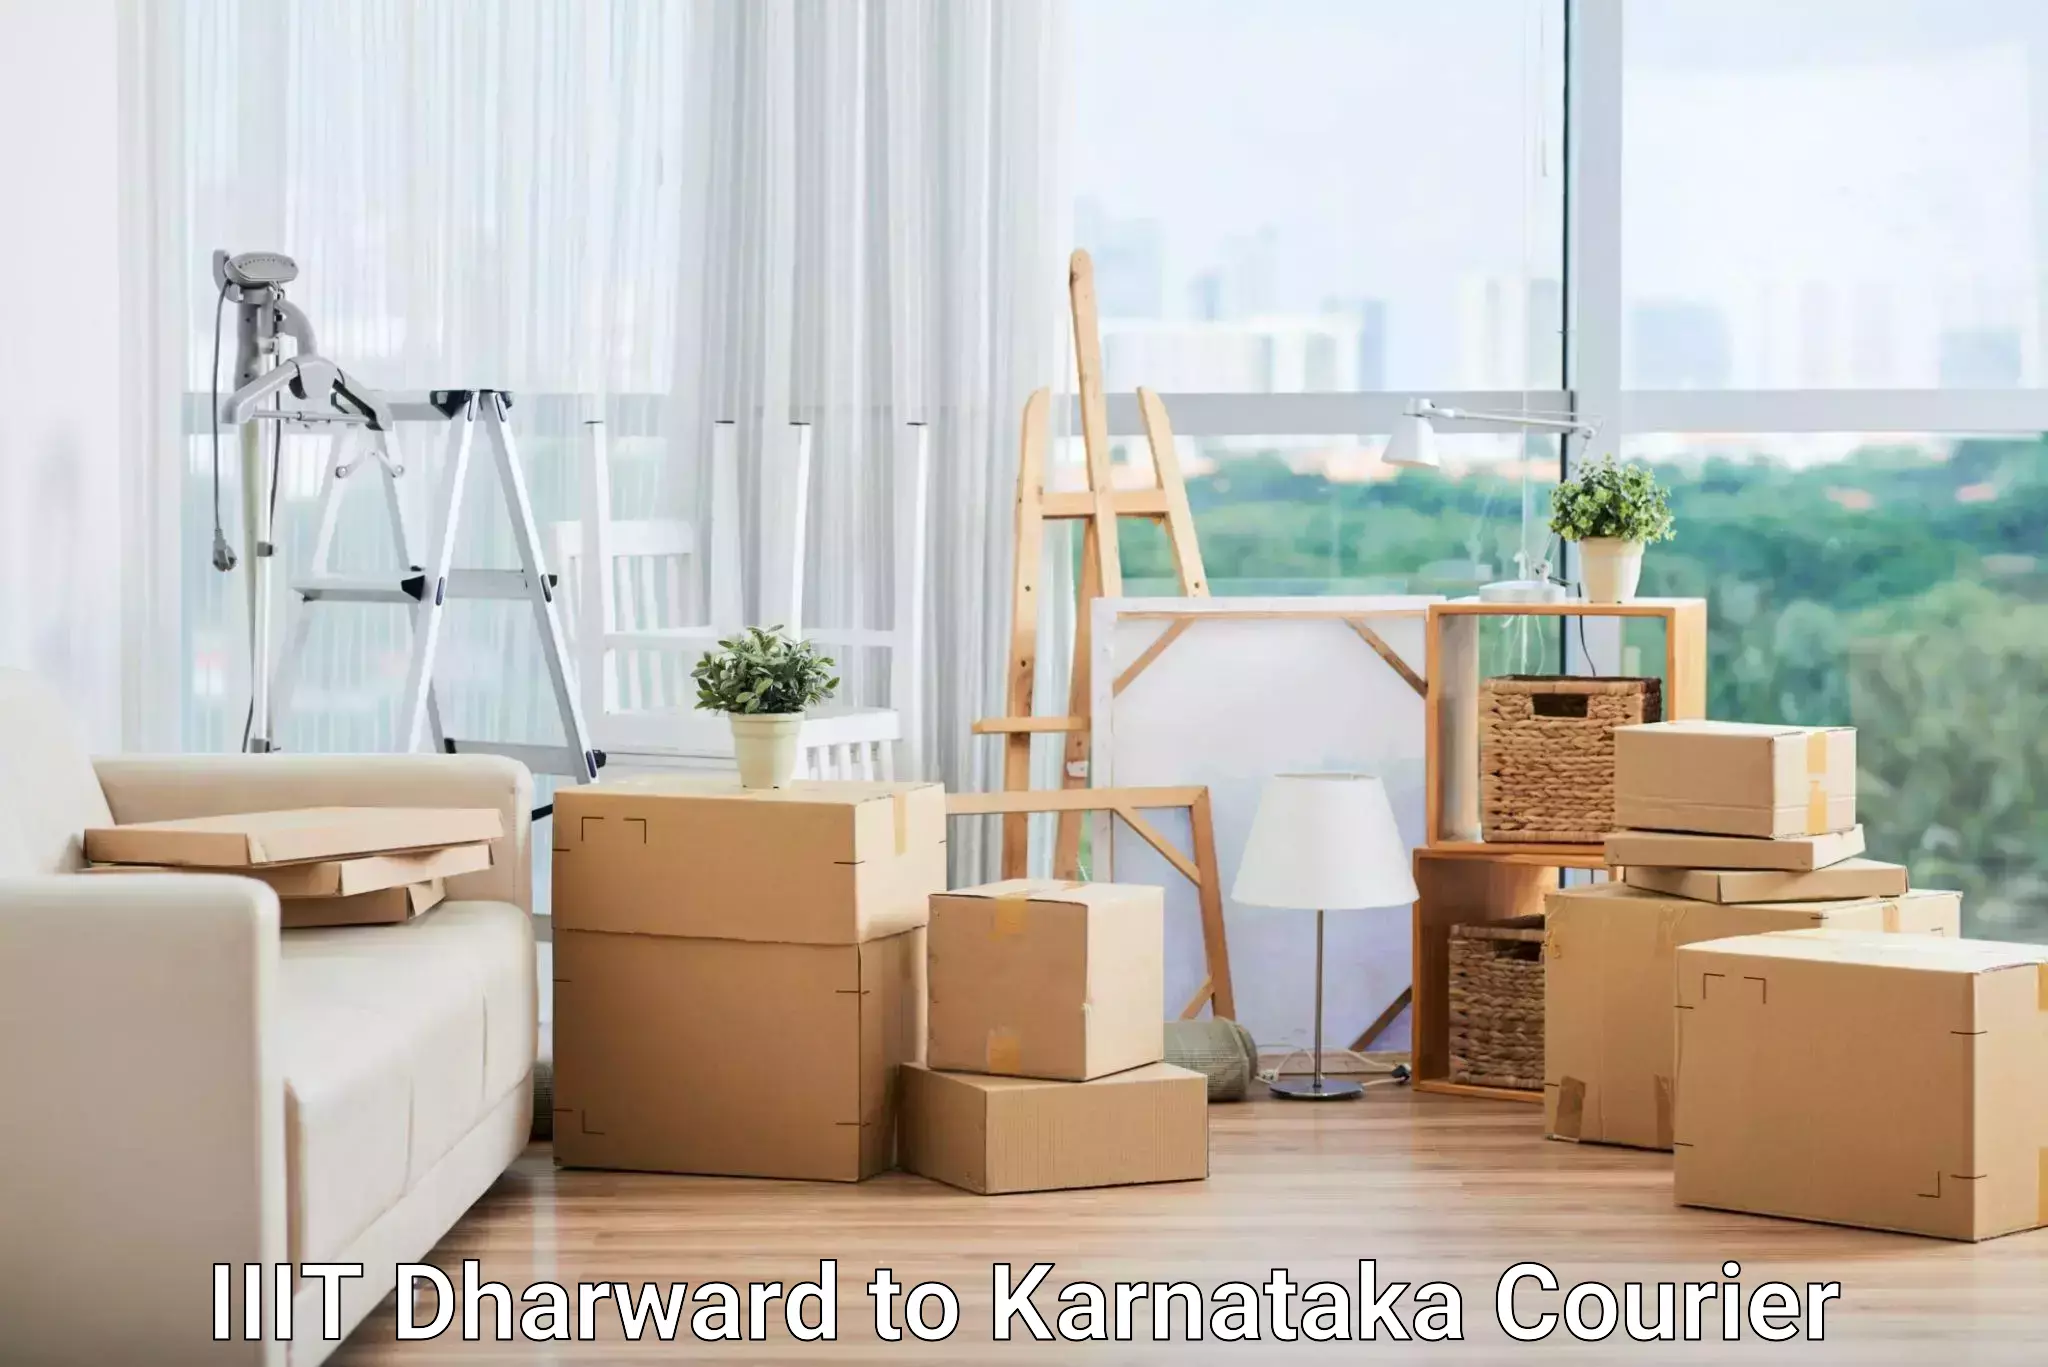 Subscription-based courier IIIT Dharward to Karnataka